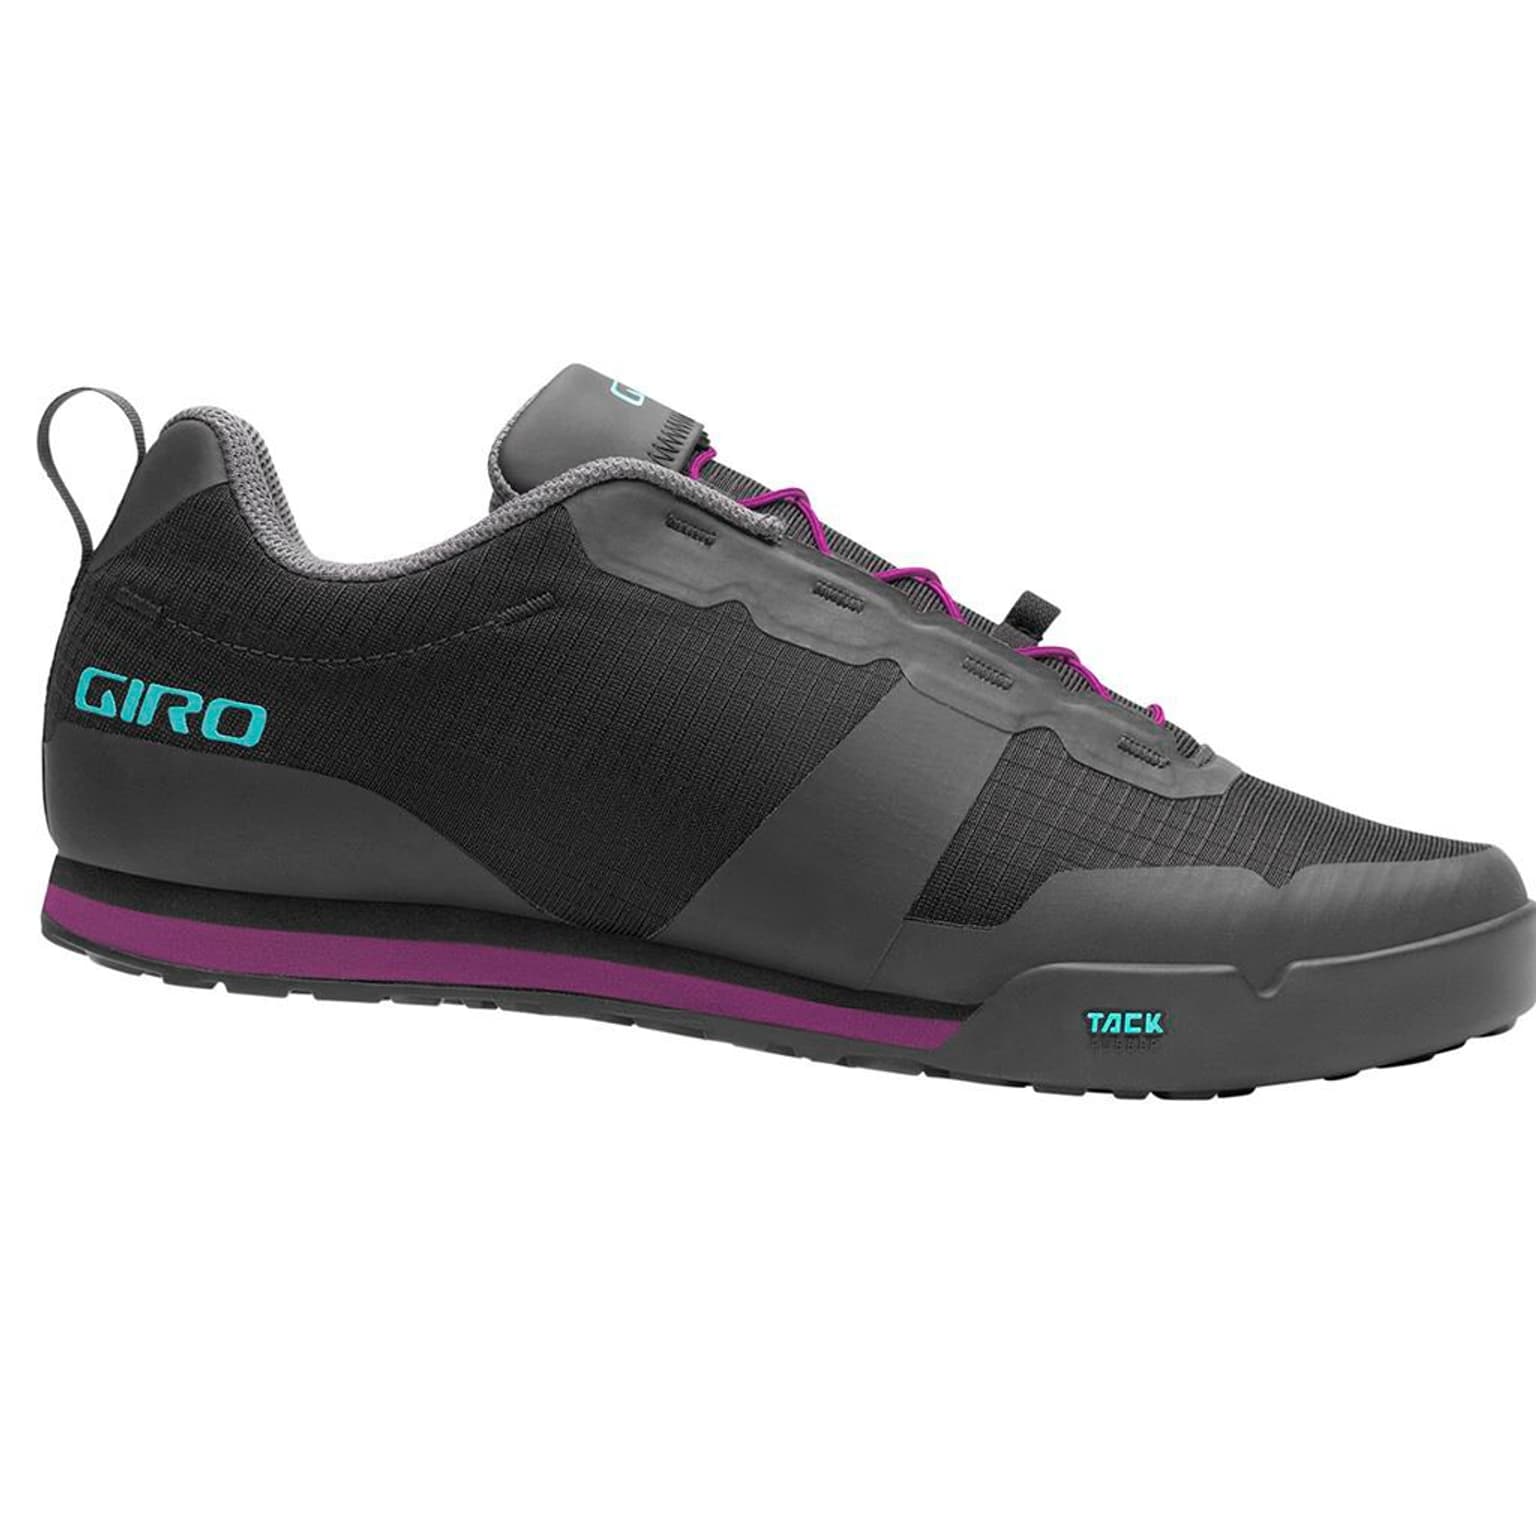 Giro Giro Tracker W FL Shoe Chaussures de cyclisme noir 1